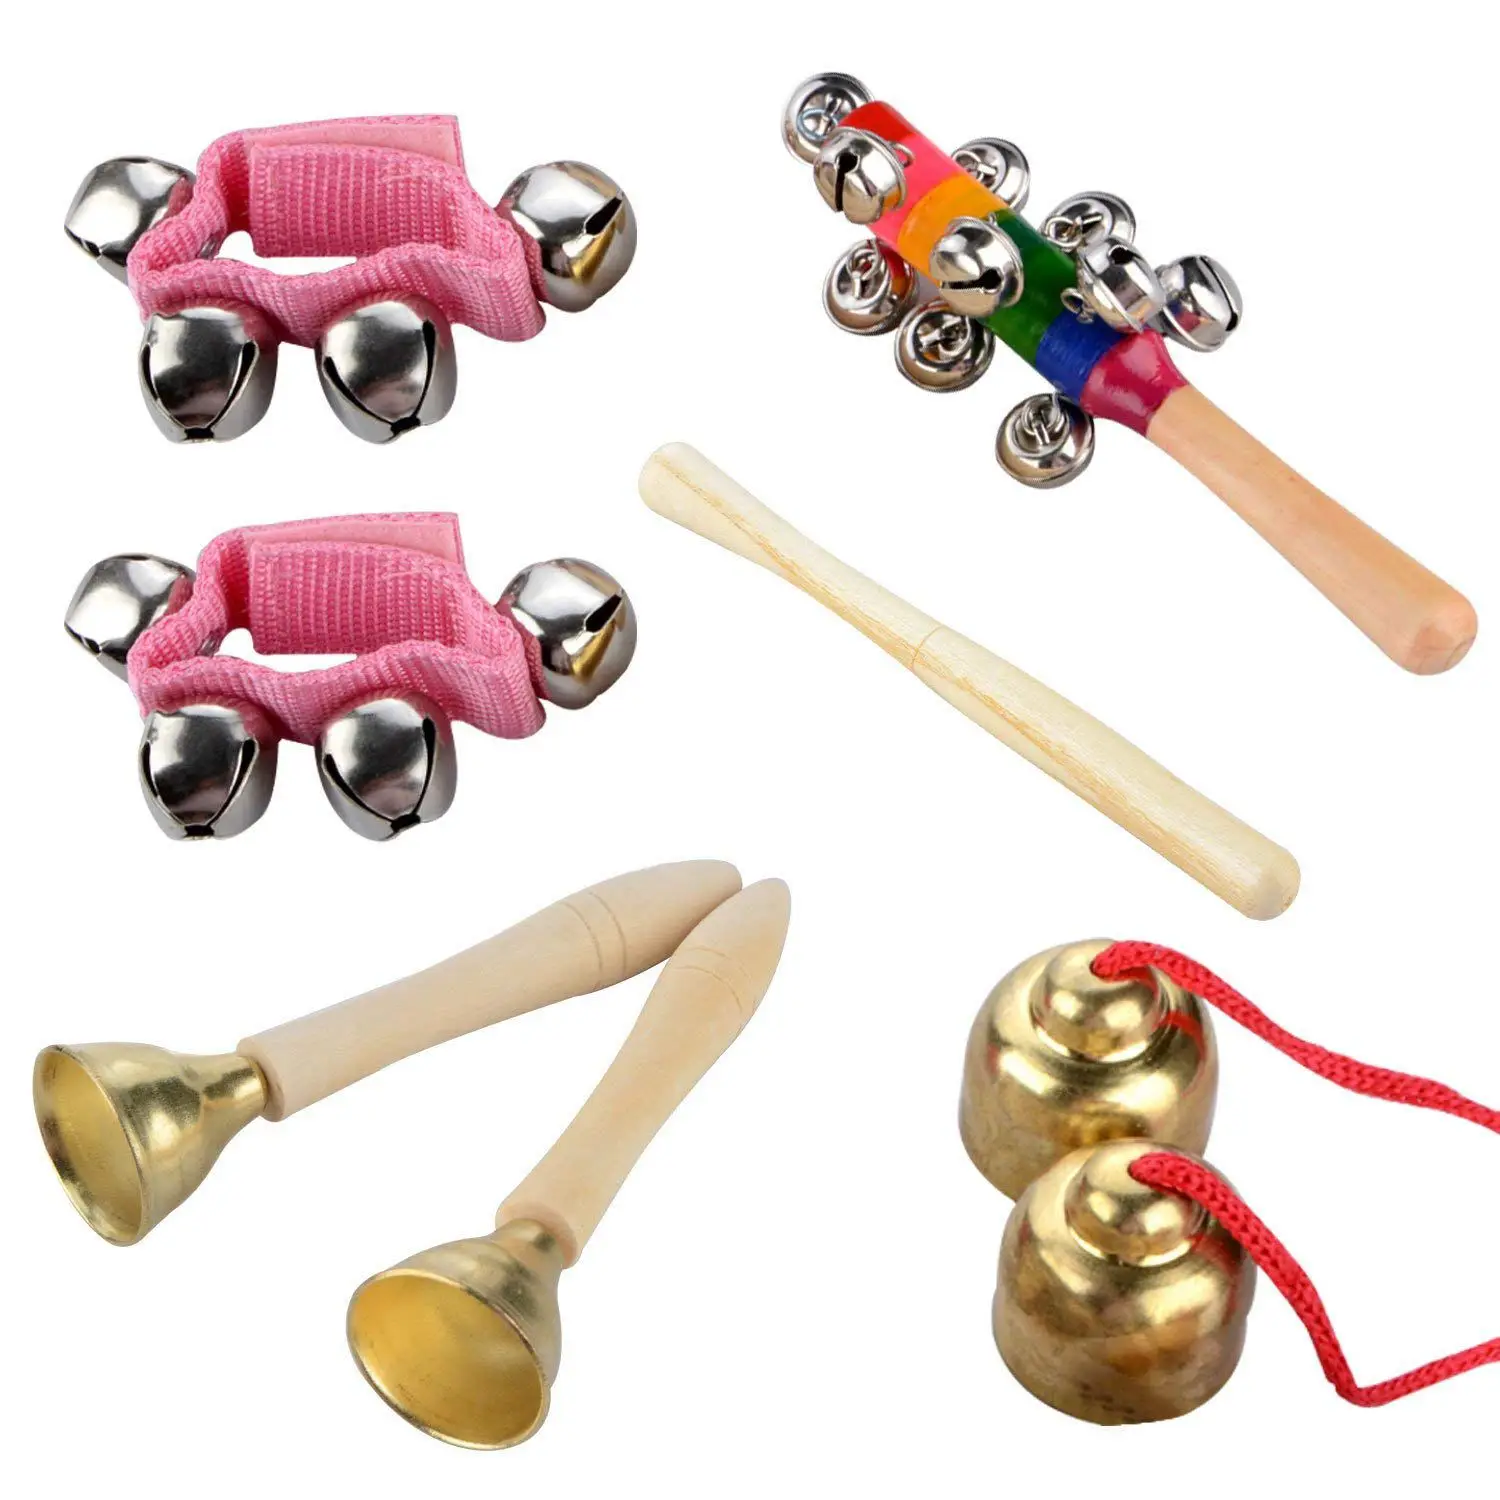 14 шт деревянные музыкальные инструменты набор ударных игрушек Ритм Группа набор, здоровый ребенок игрушка подарок, с сумкой